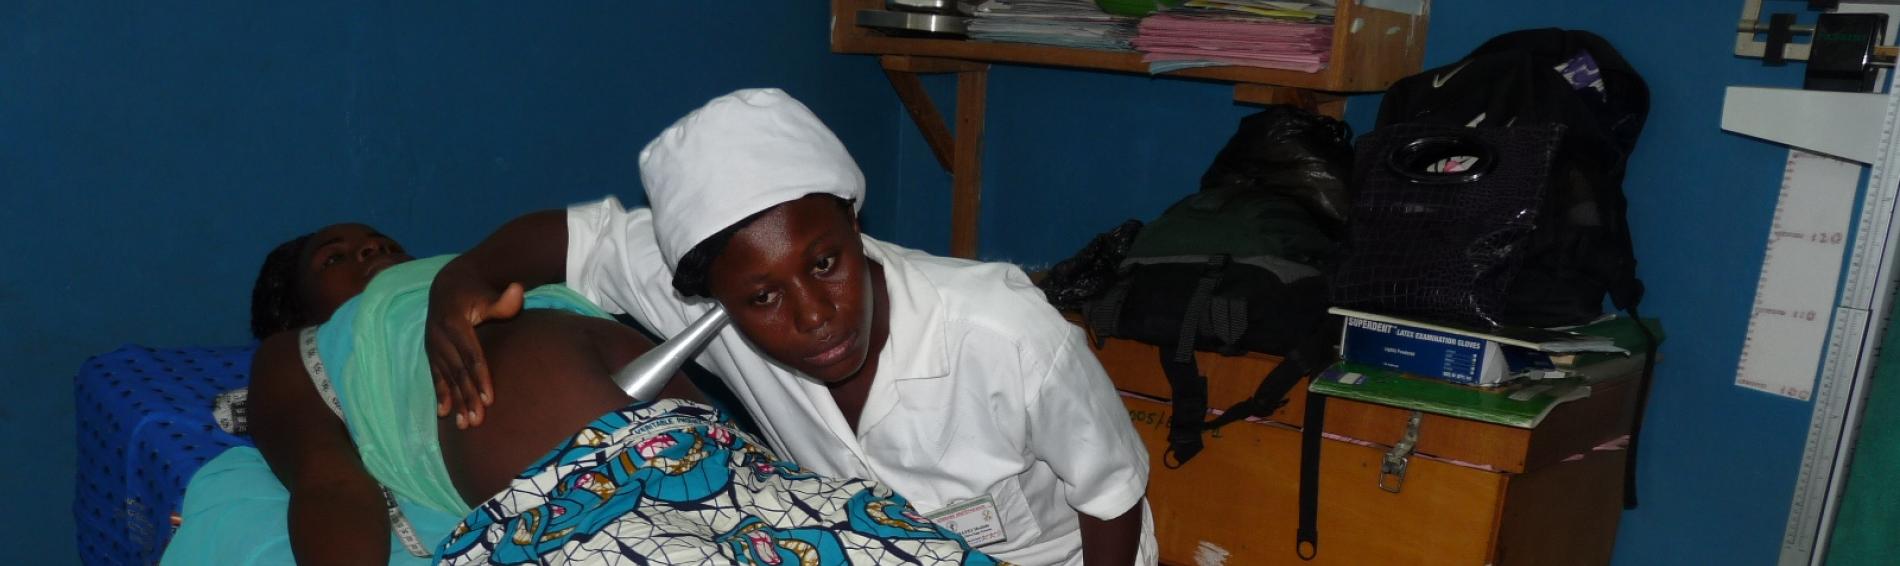 Hebamme versorgt junge Mutter in Togo. Foto: Ärzte der Welt